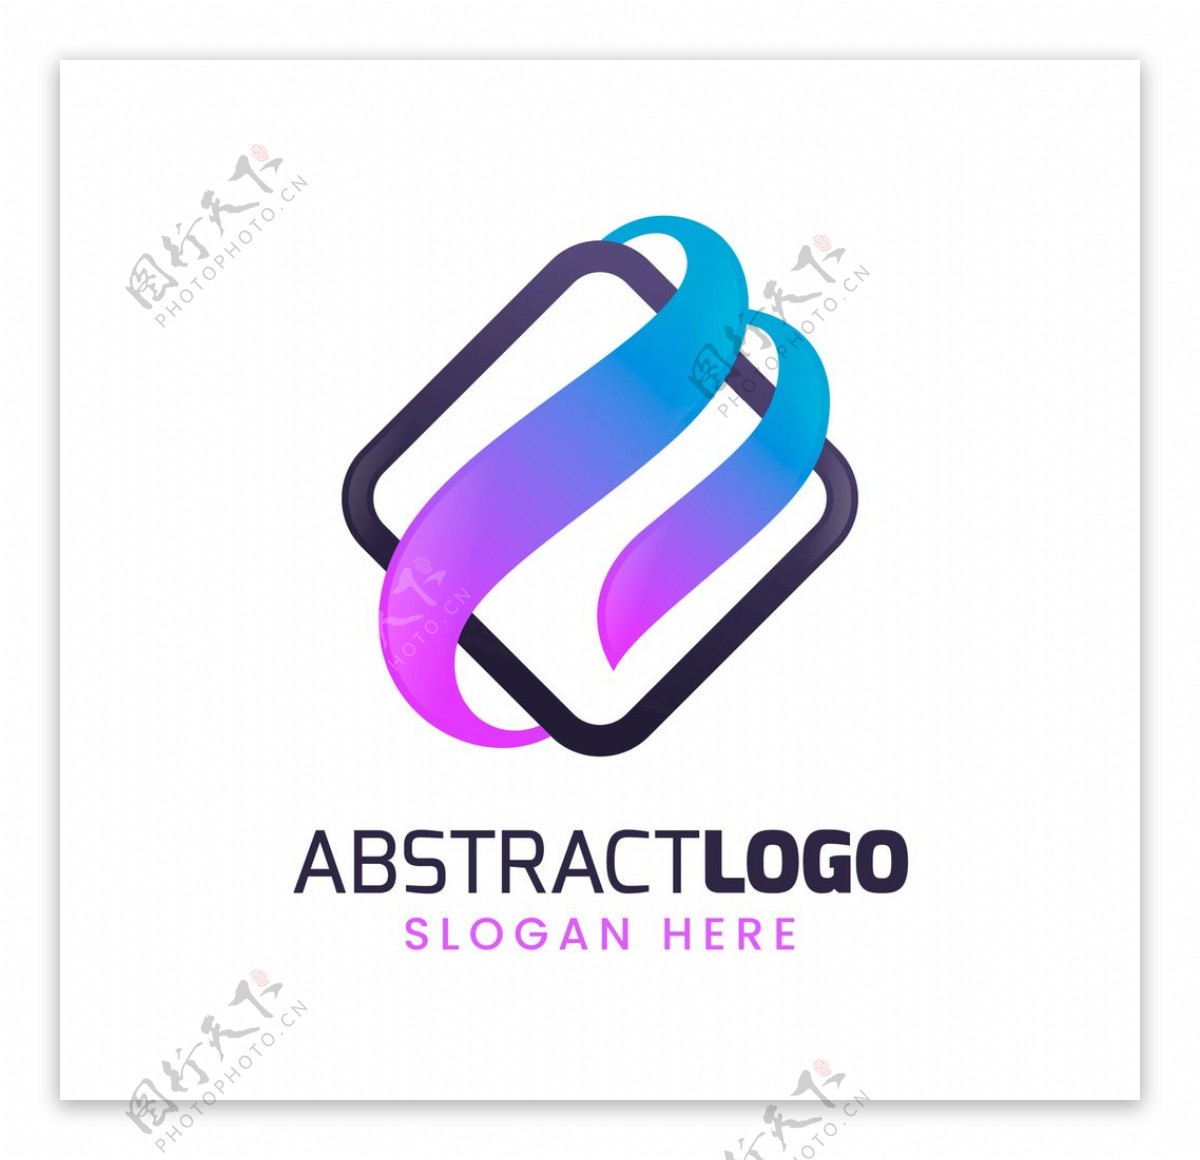 商务简约抽象几何logo设计